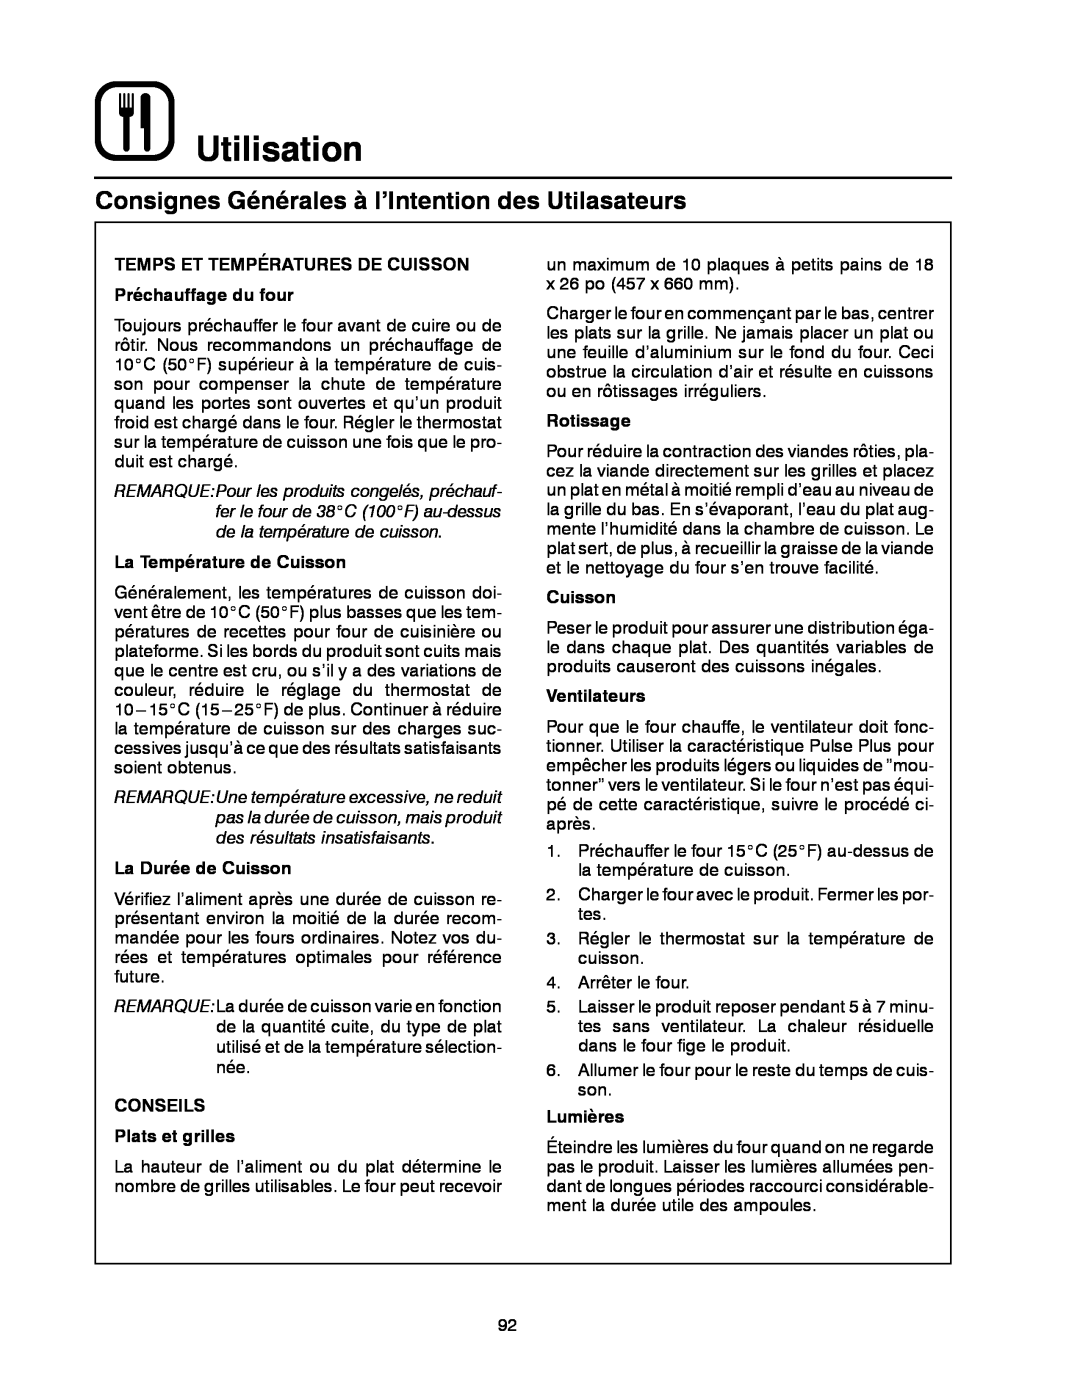 Blodgett DFG-200 Consignes Générales à l’Intention des Utilasateurs, Utilisation, La Température de Cuisson, Rotissage 